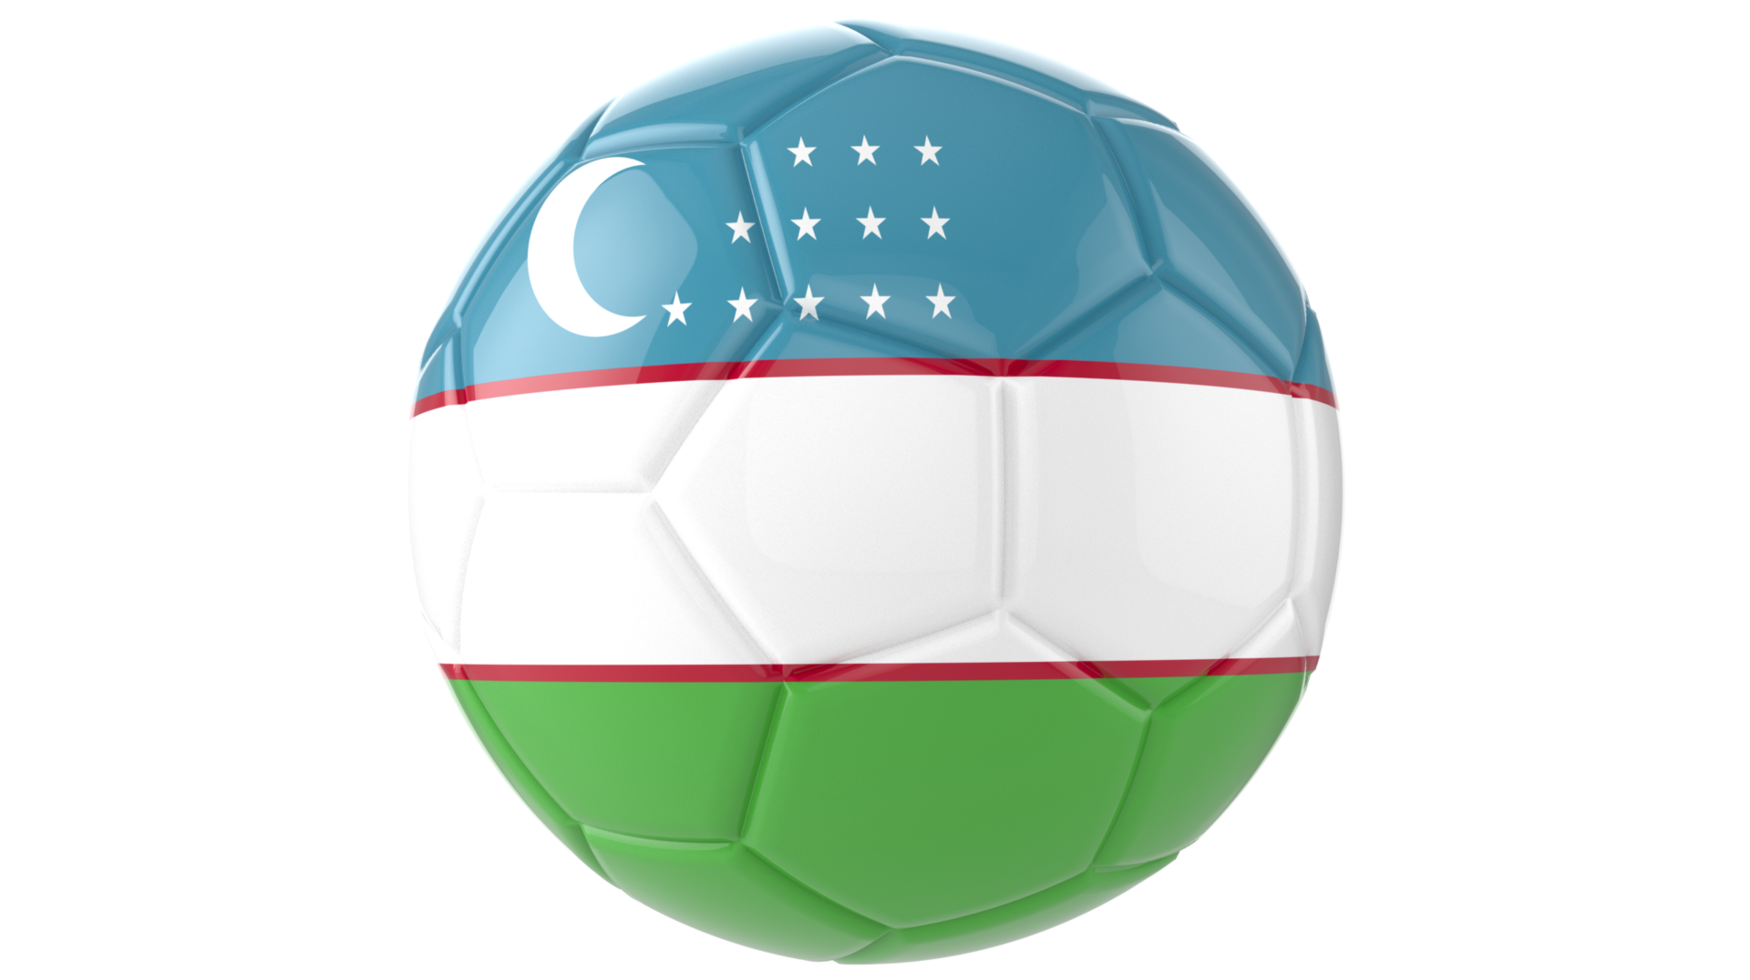 3d bola de futebol realista com a bandeira do uzbequistão isolada em fundo png transparente